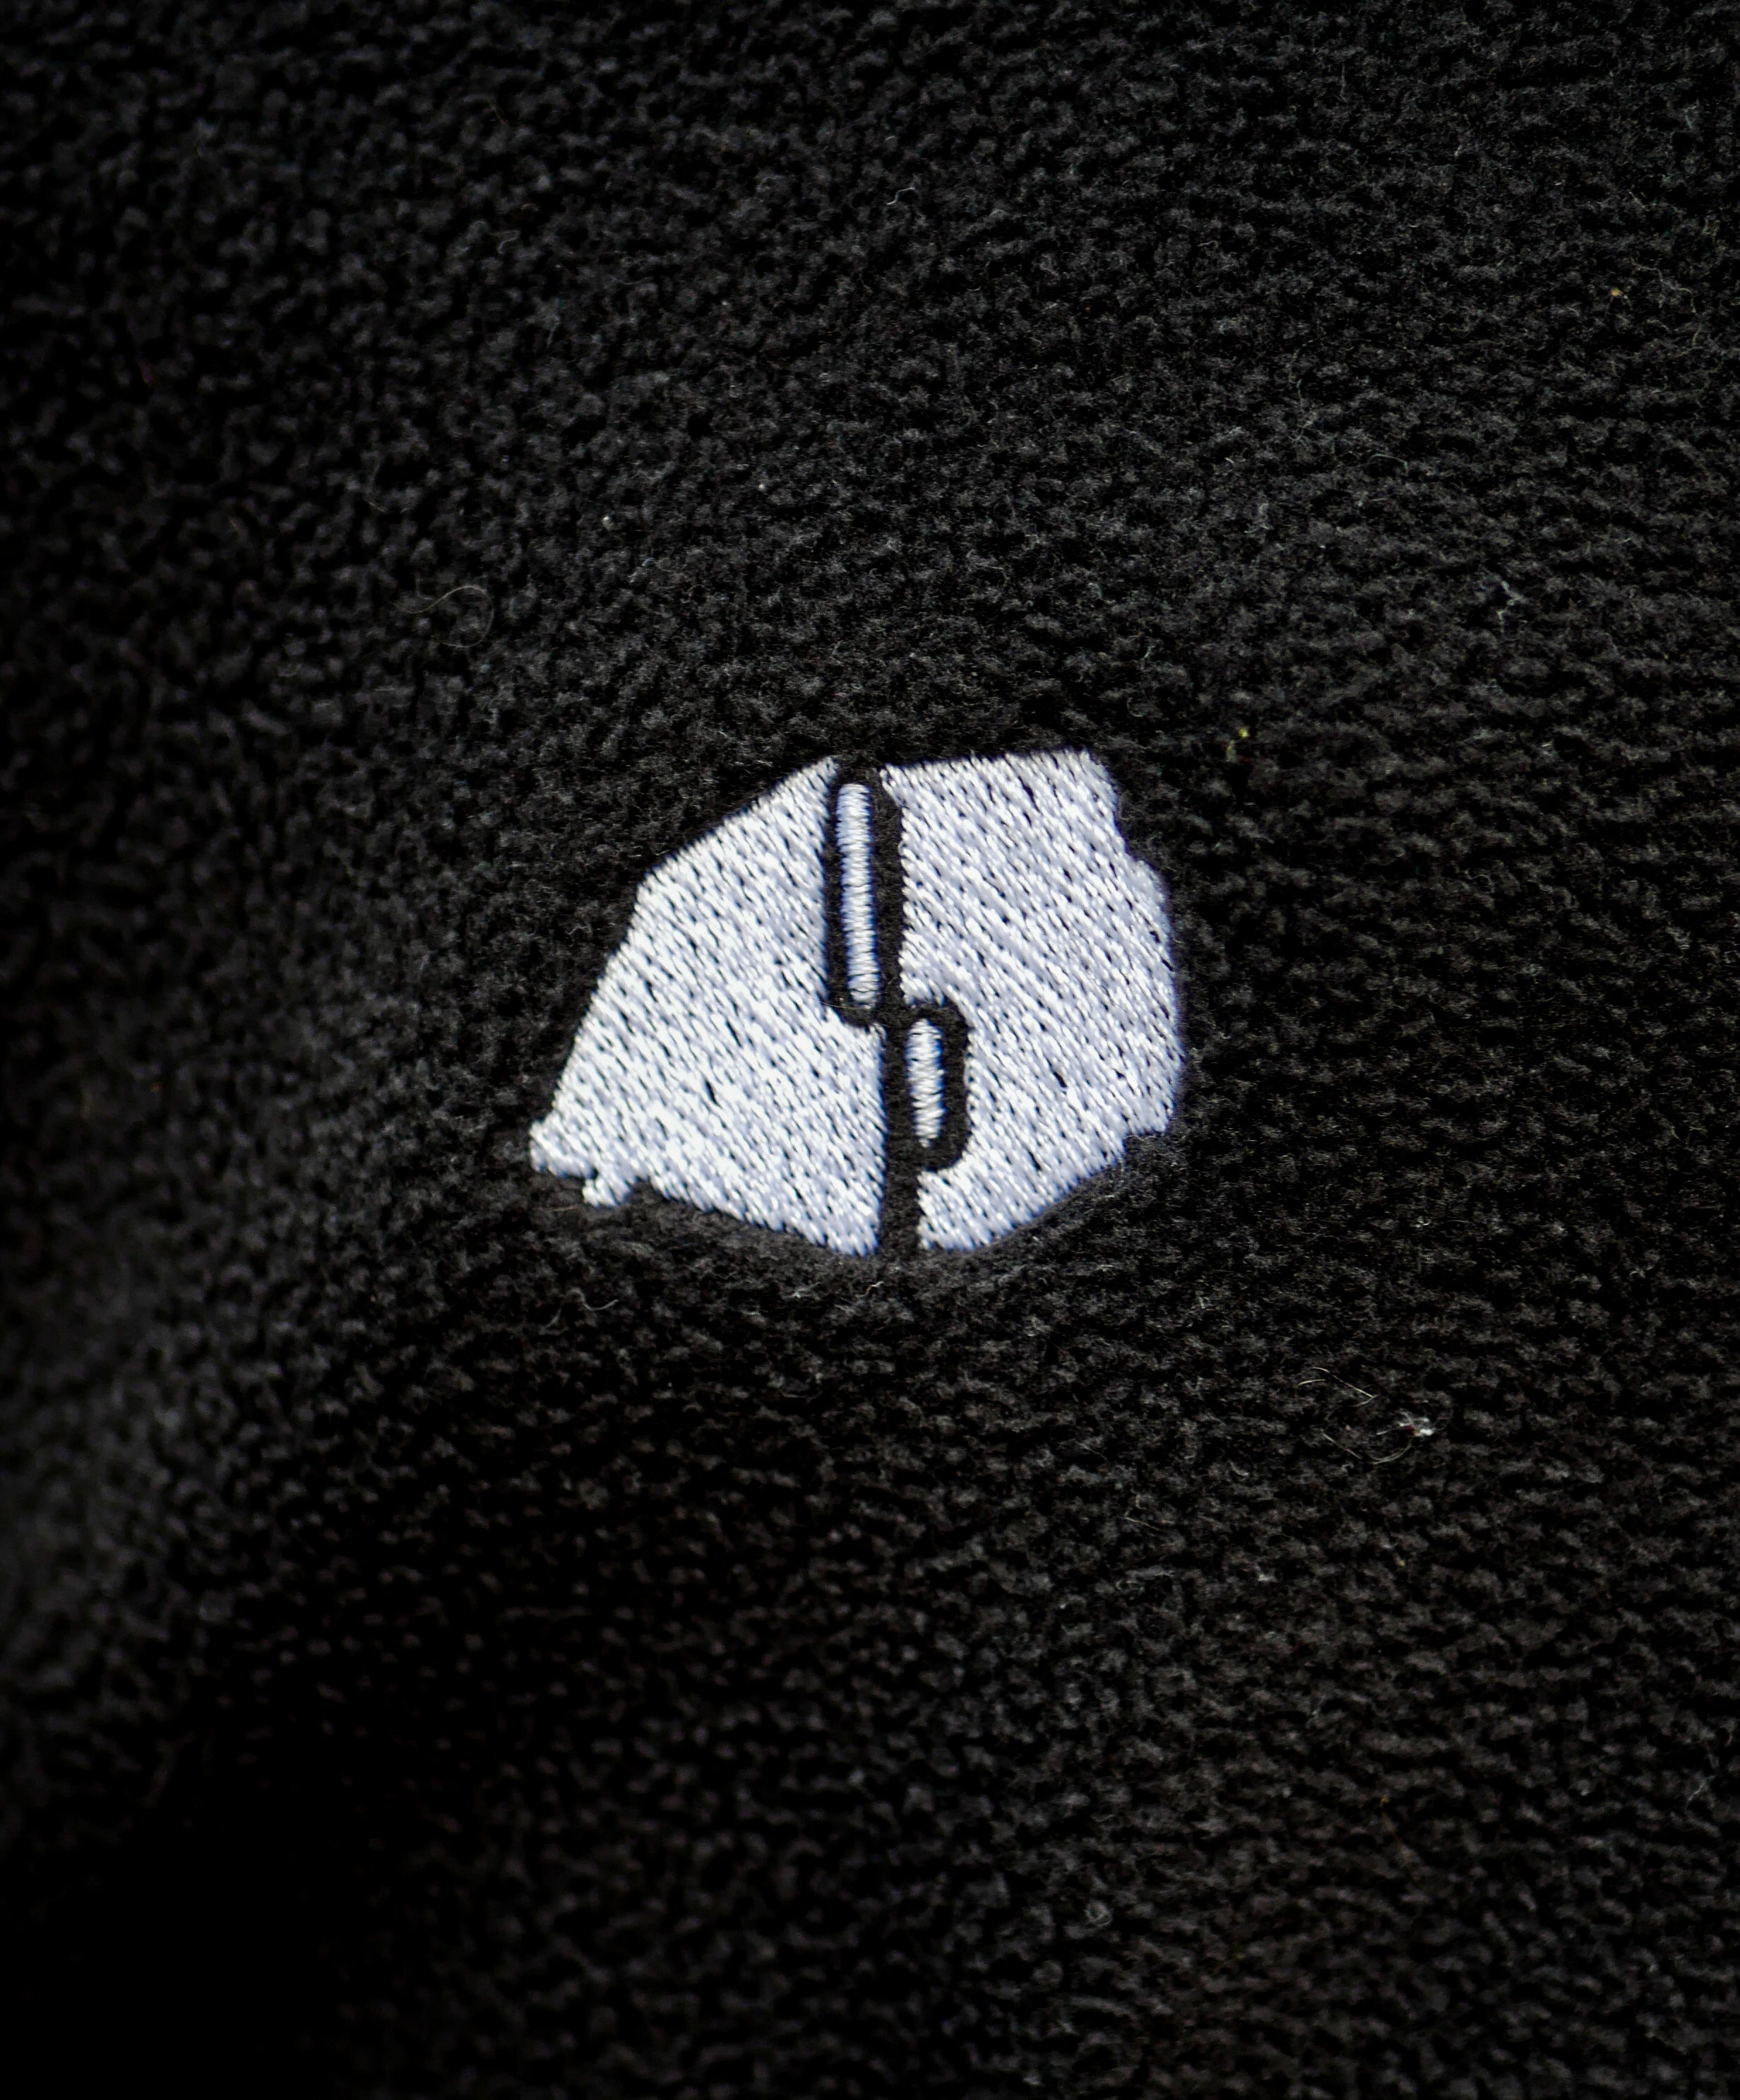 Fleece Jacket Ombre Parisienne - Black - Ombre Parisienne